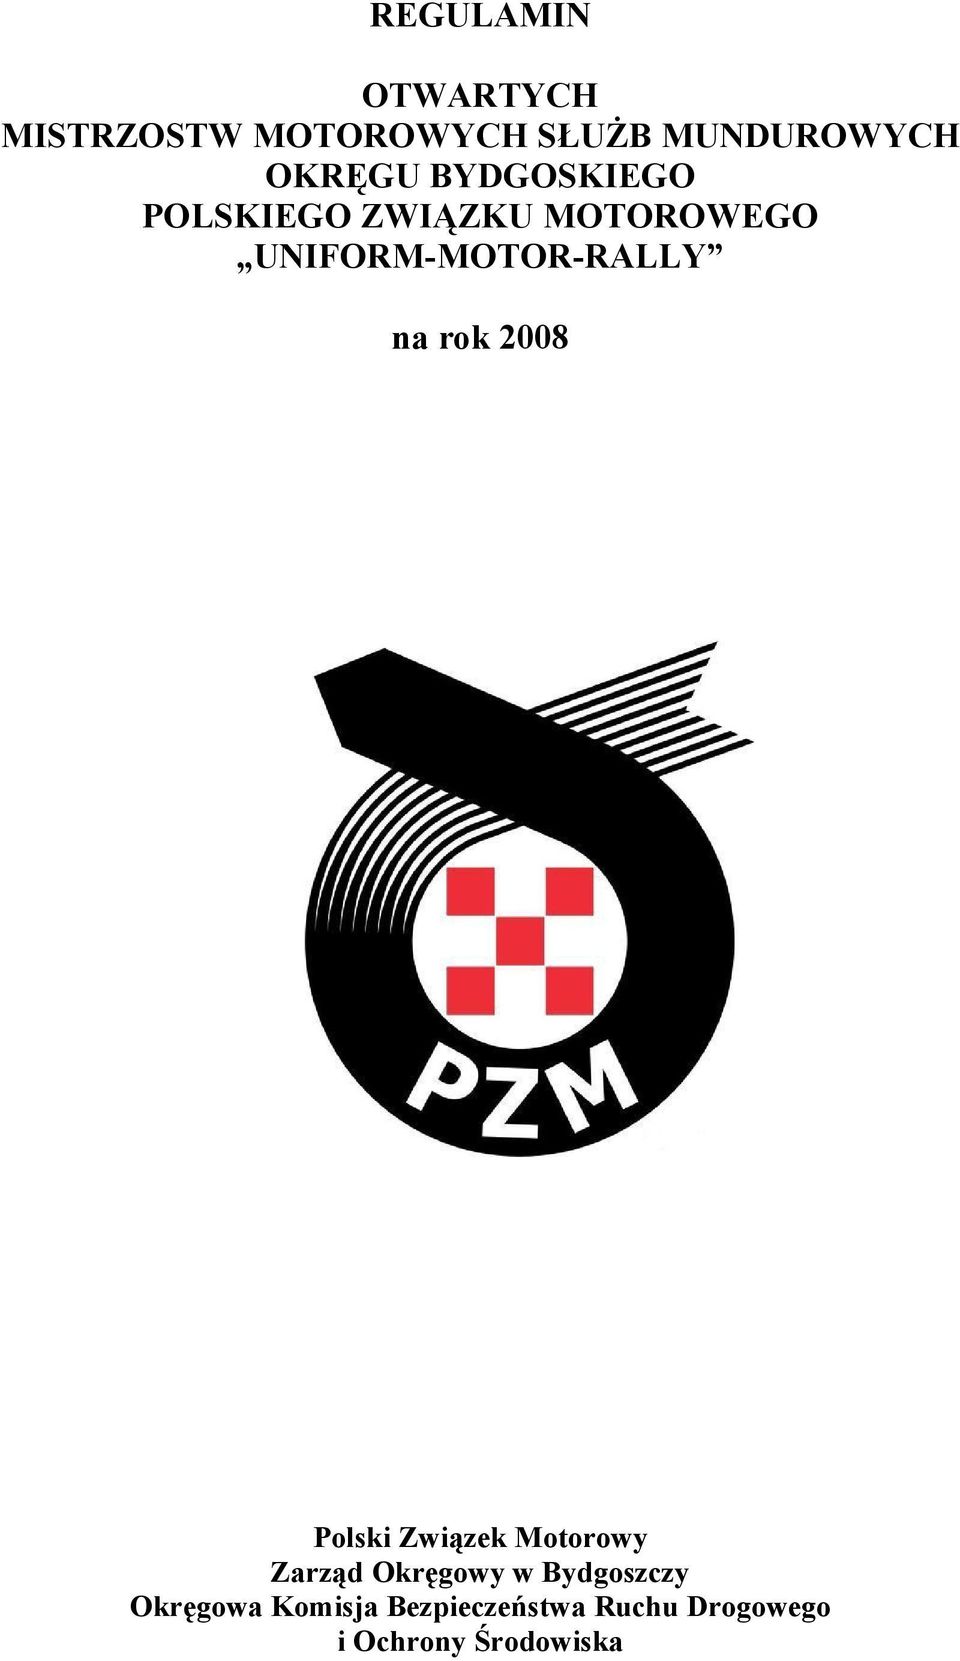 UNIFORM-MOTOR-RALLY na rok 2008 Polski Związek Motorowy Zarząd